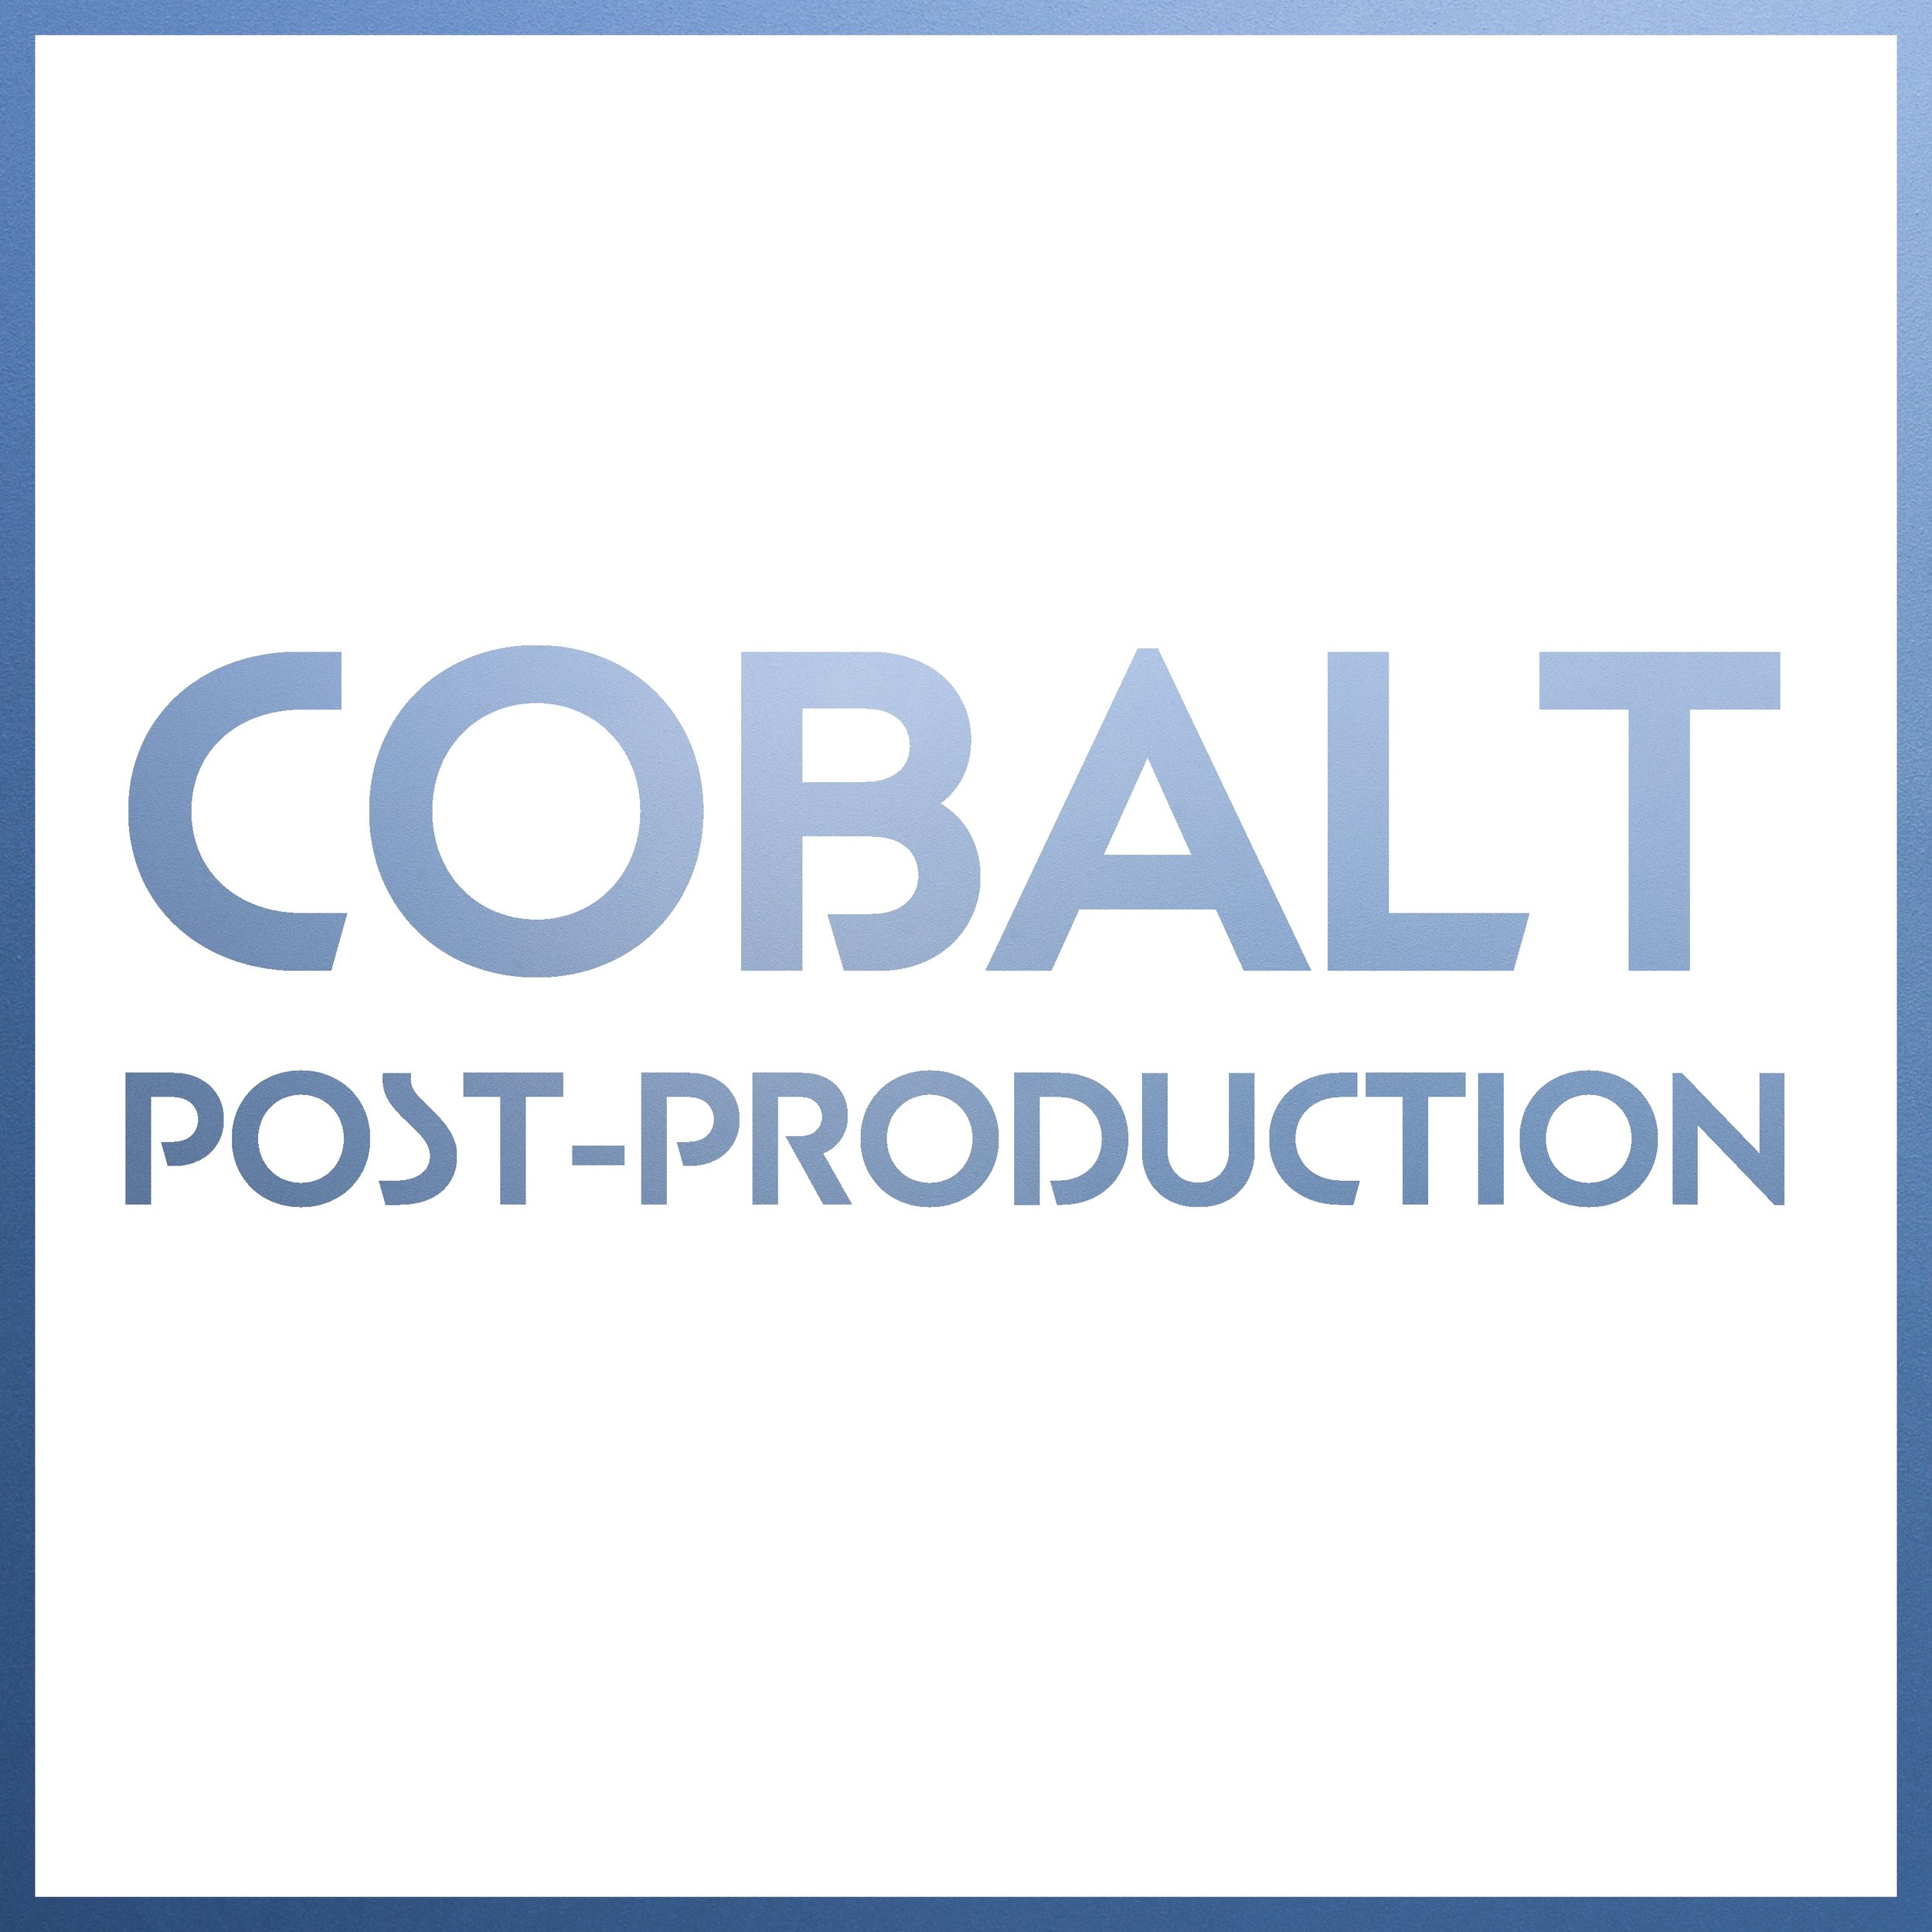 COBALT POST-PRODUCTION